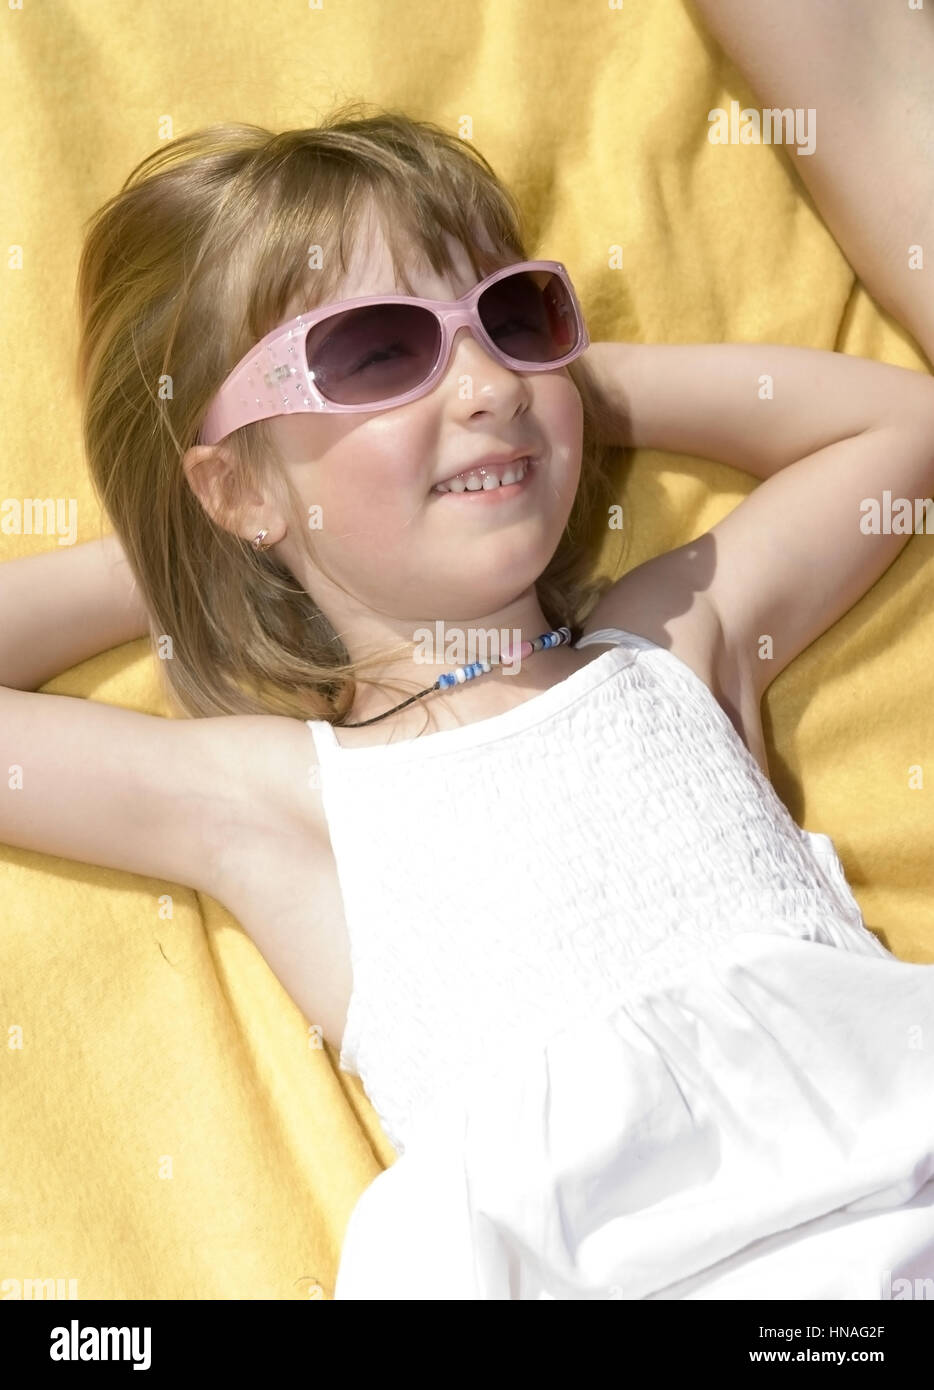 Maedchen mit Sonnebrille - chica con gafas de sol Foto de stock